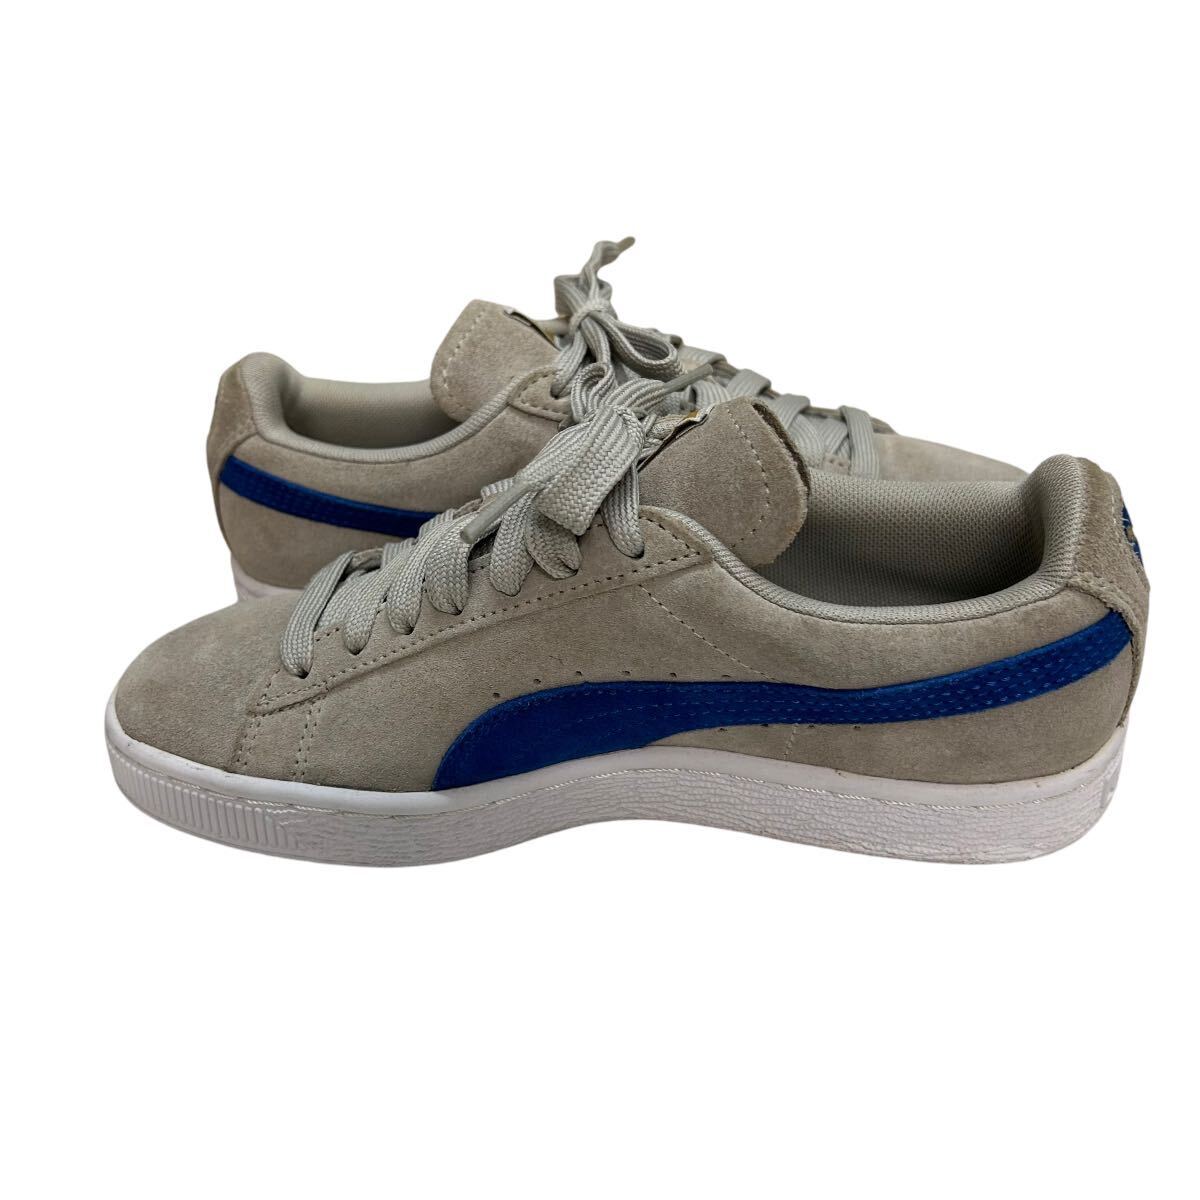 A947 PUMA Puma SUEDE замша женский low cut спортивные туфли US6 22.5cm светло-серый голубой 